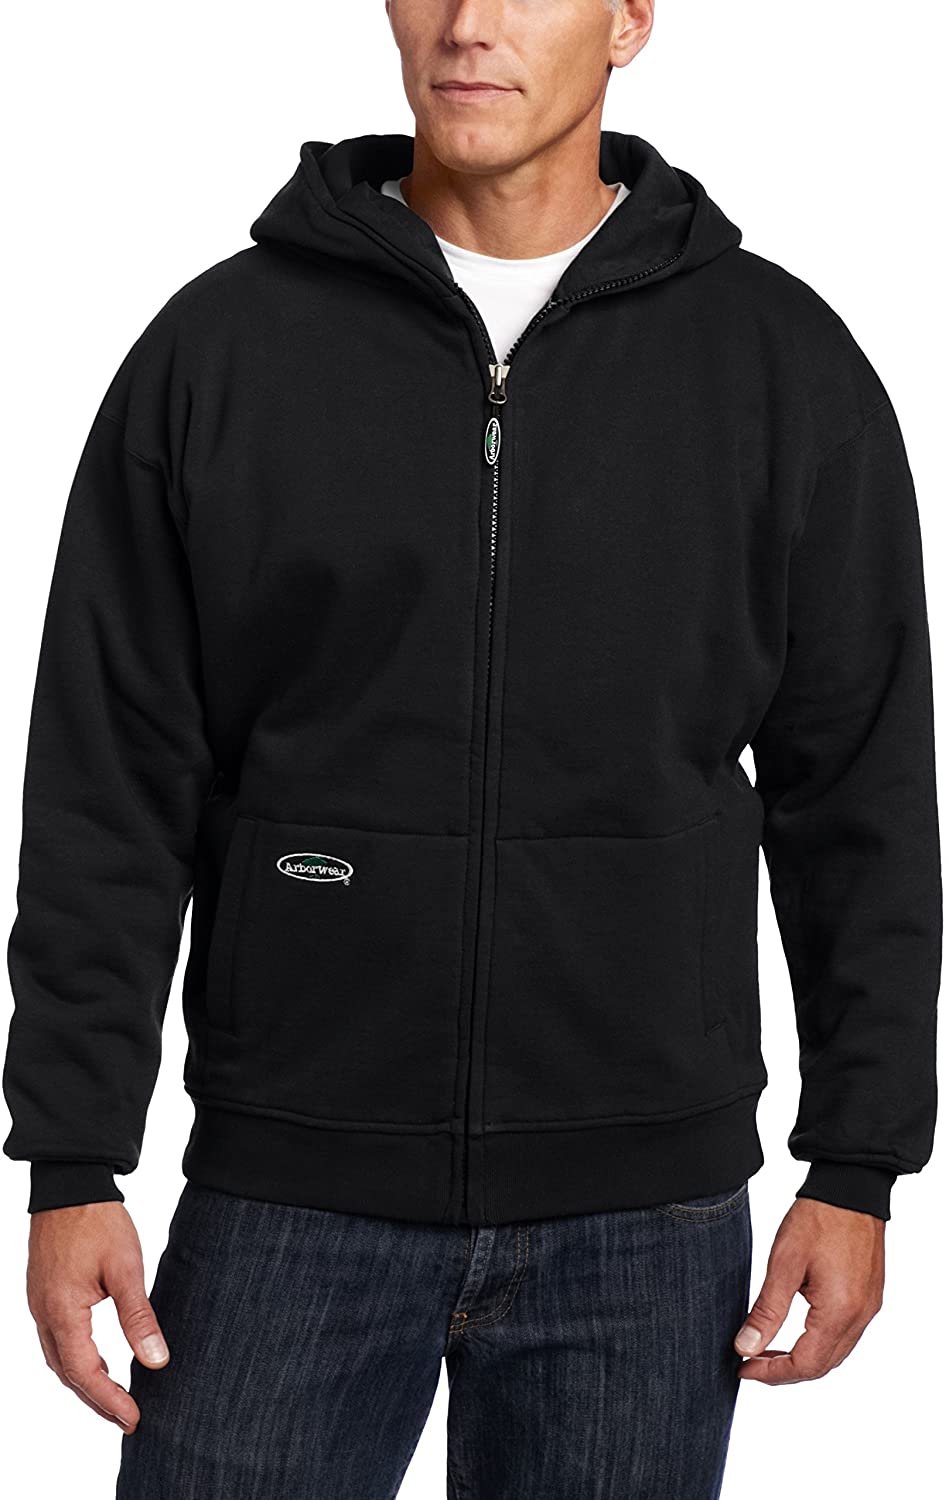 Men's Arborwear Double Thick Full Zip Sweatshirt in Black